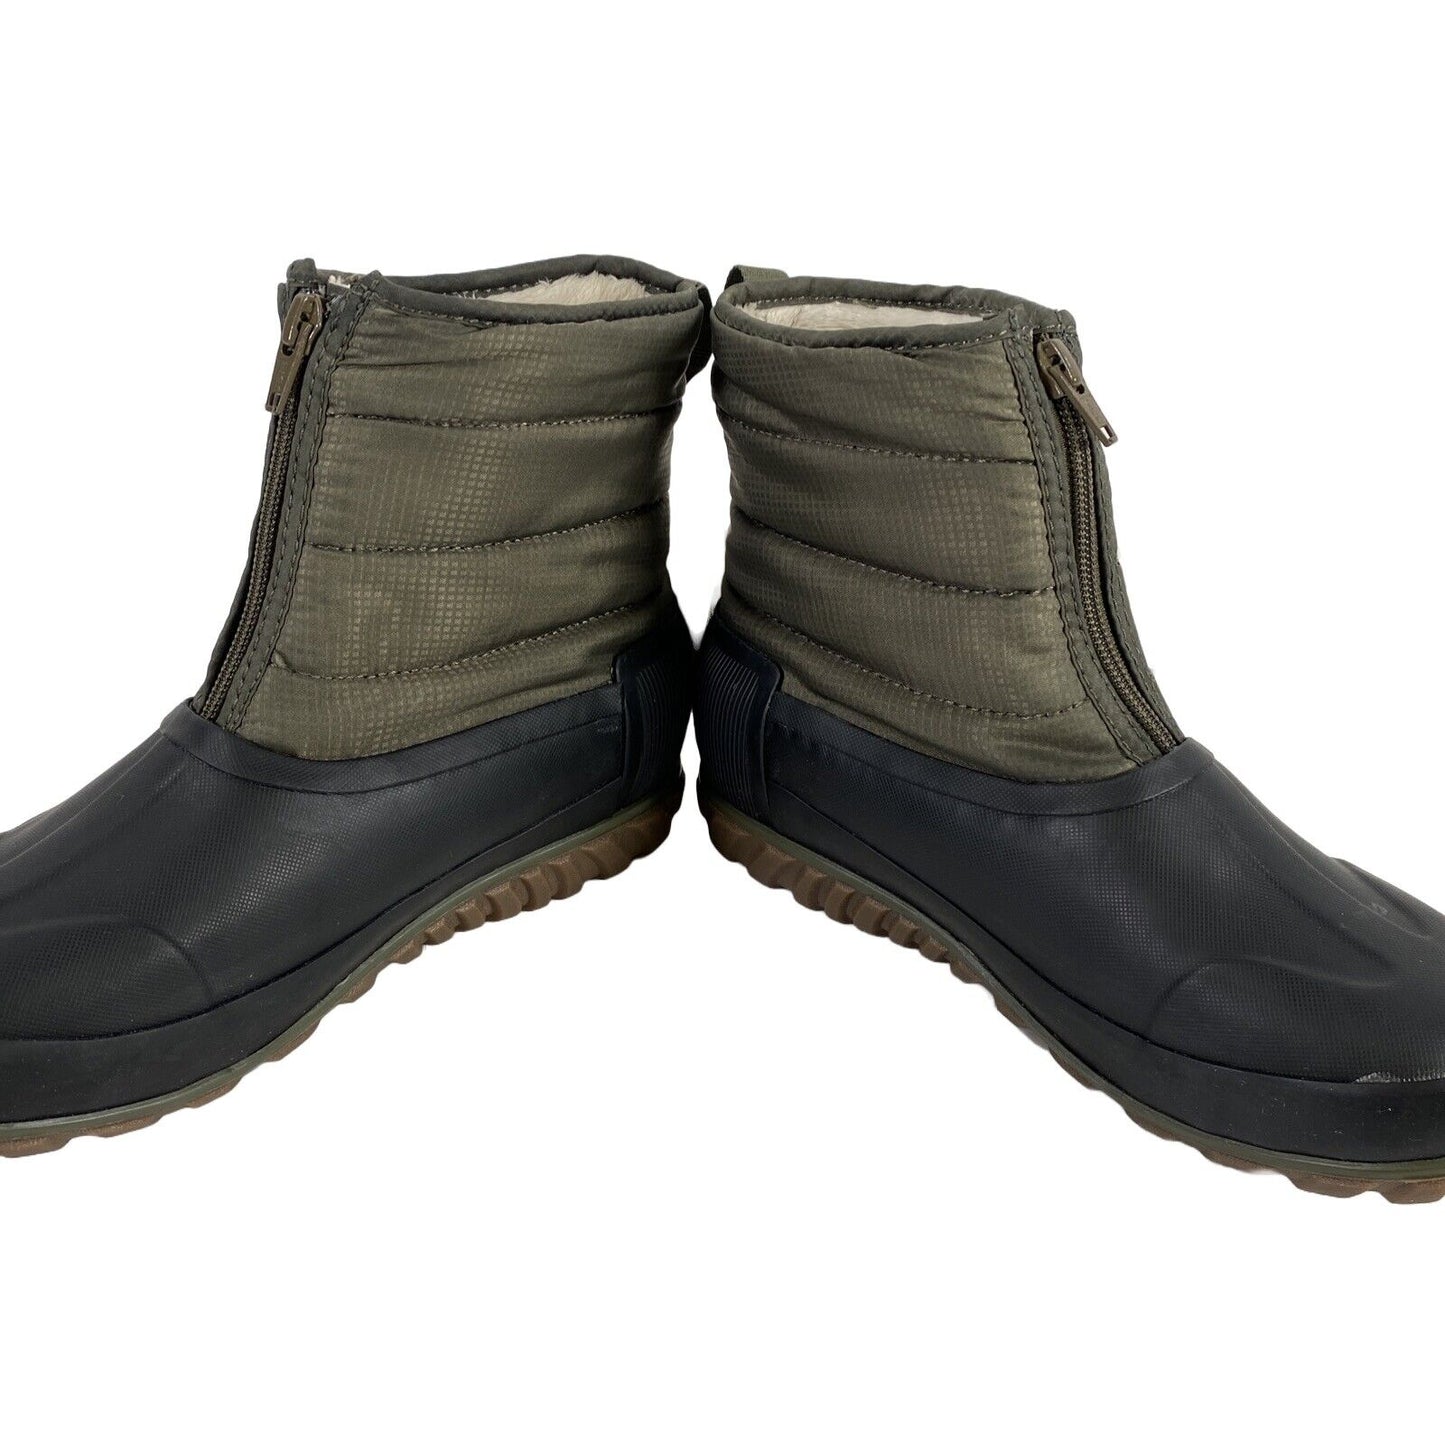 NUEVAS botas impermeables con cremallera de invierno informales en verde oliva para mujer Bogs - 6